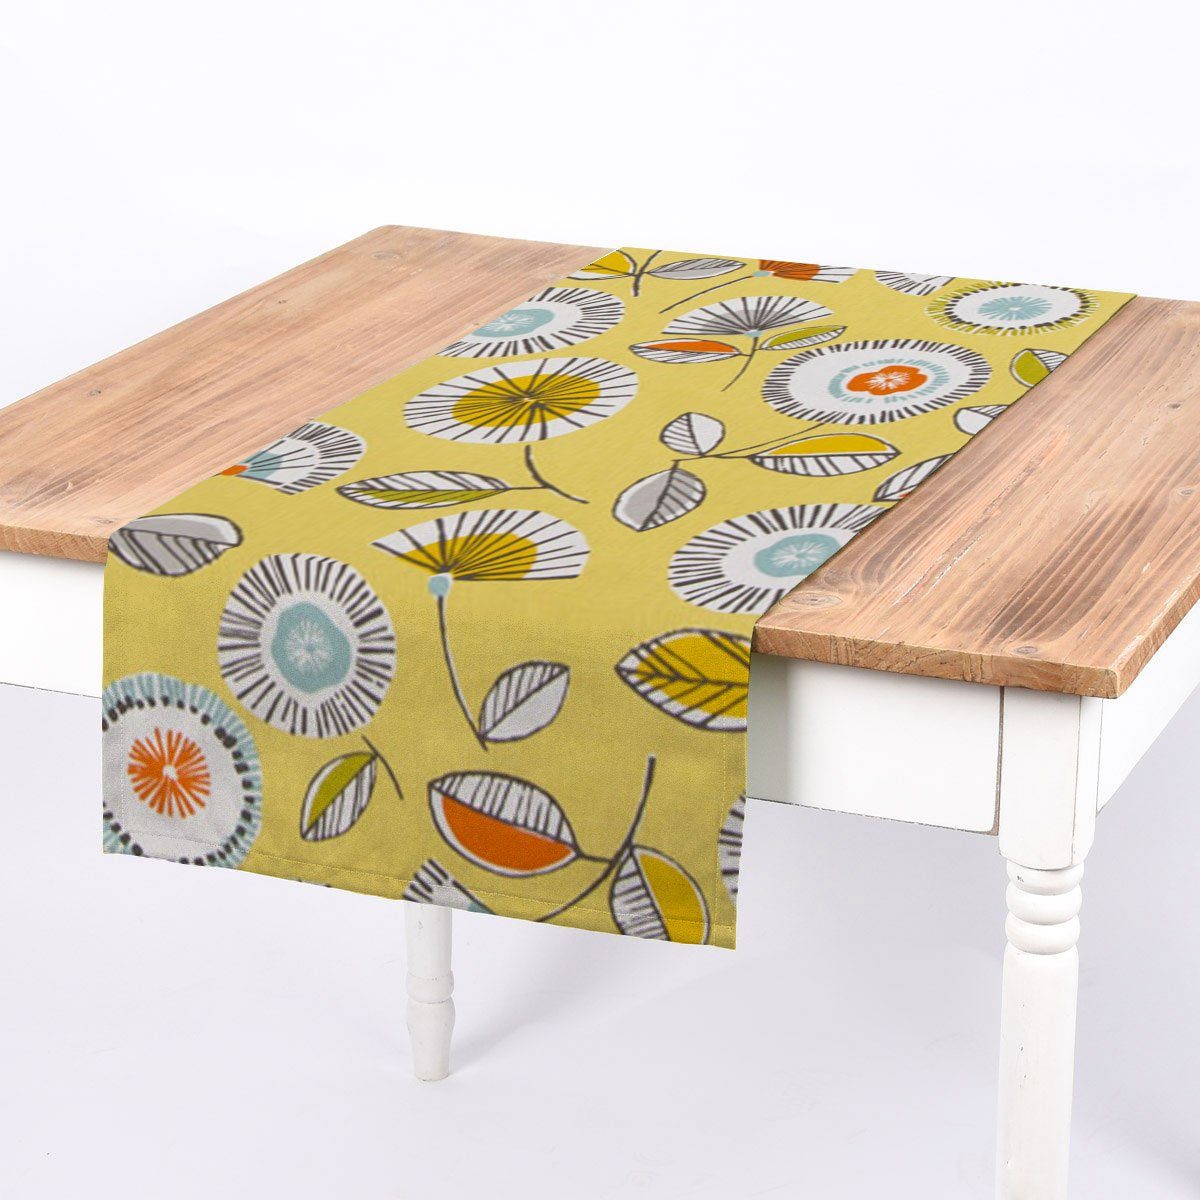 SCHÖNER LEBEN. Tischläufer SCHÖNER LEBEN. Tischläufer Sundance Blumen hellgrün braun orange aqu, handmade | Tischläufer